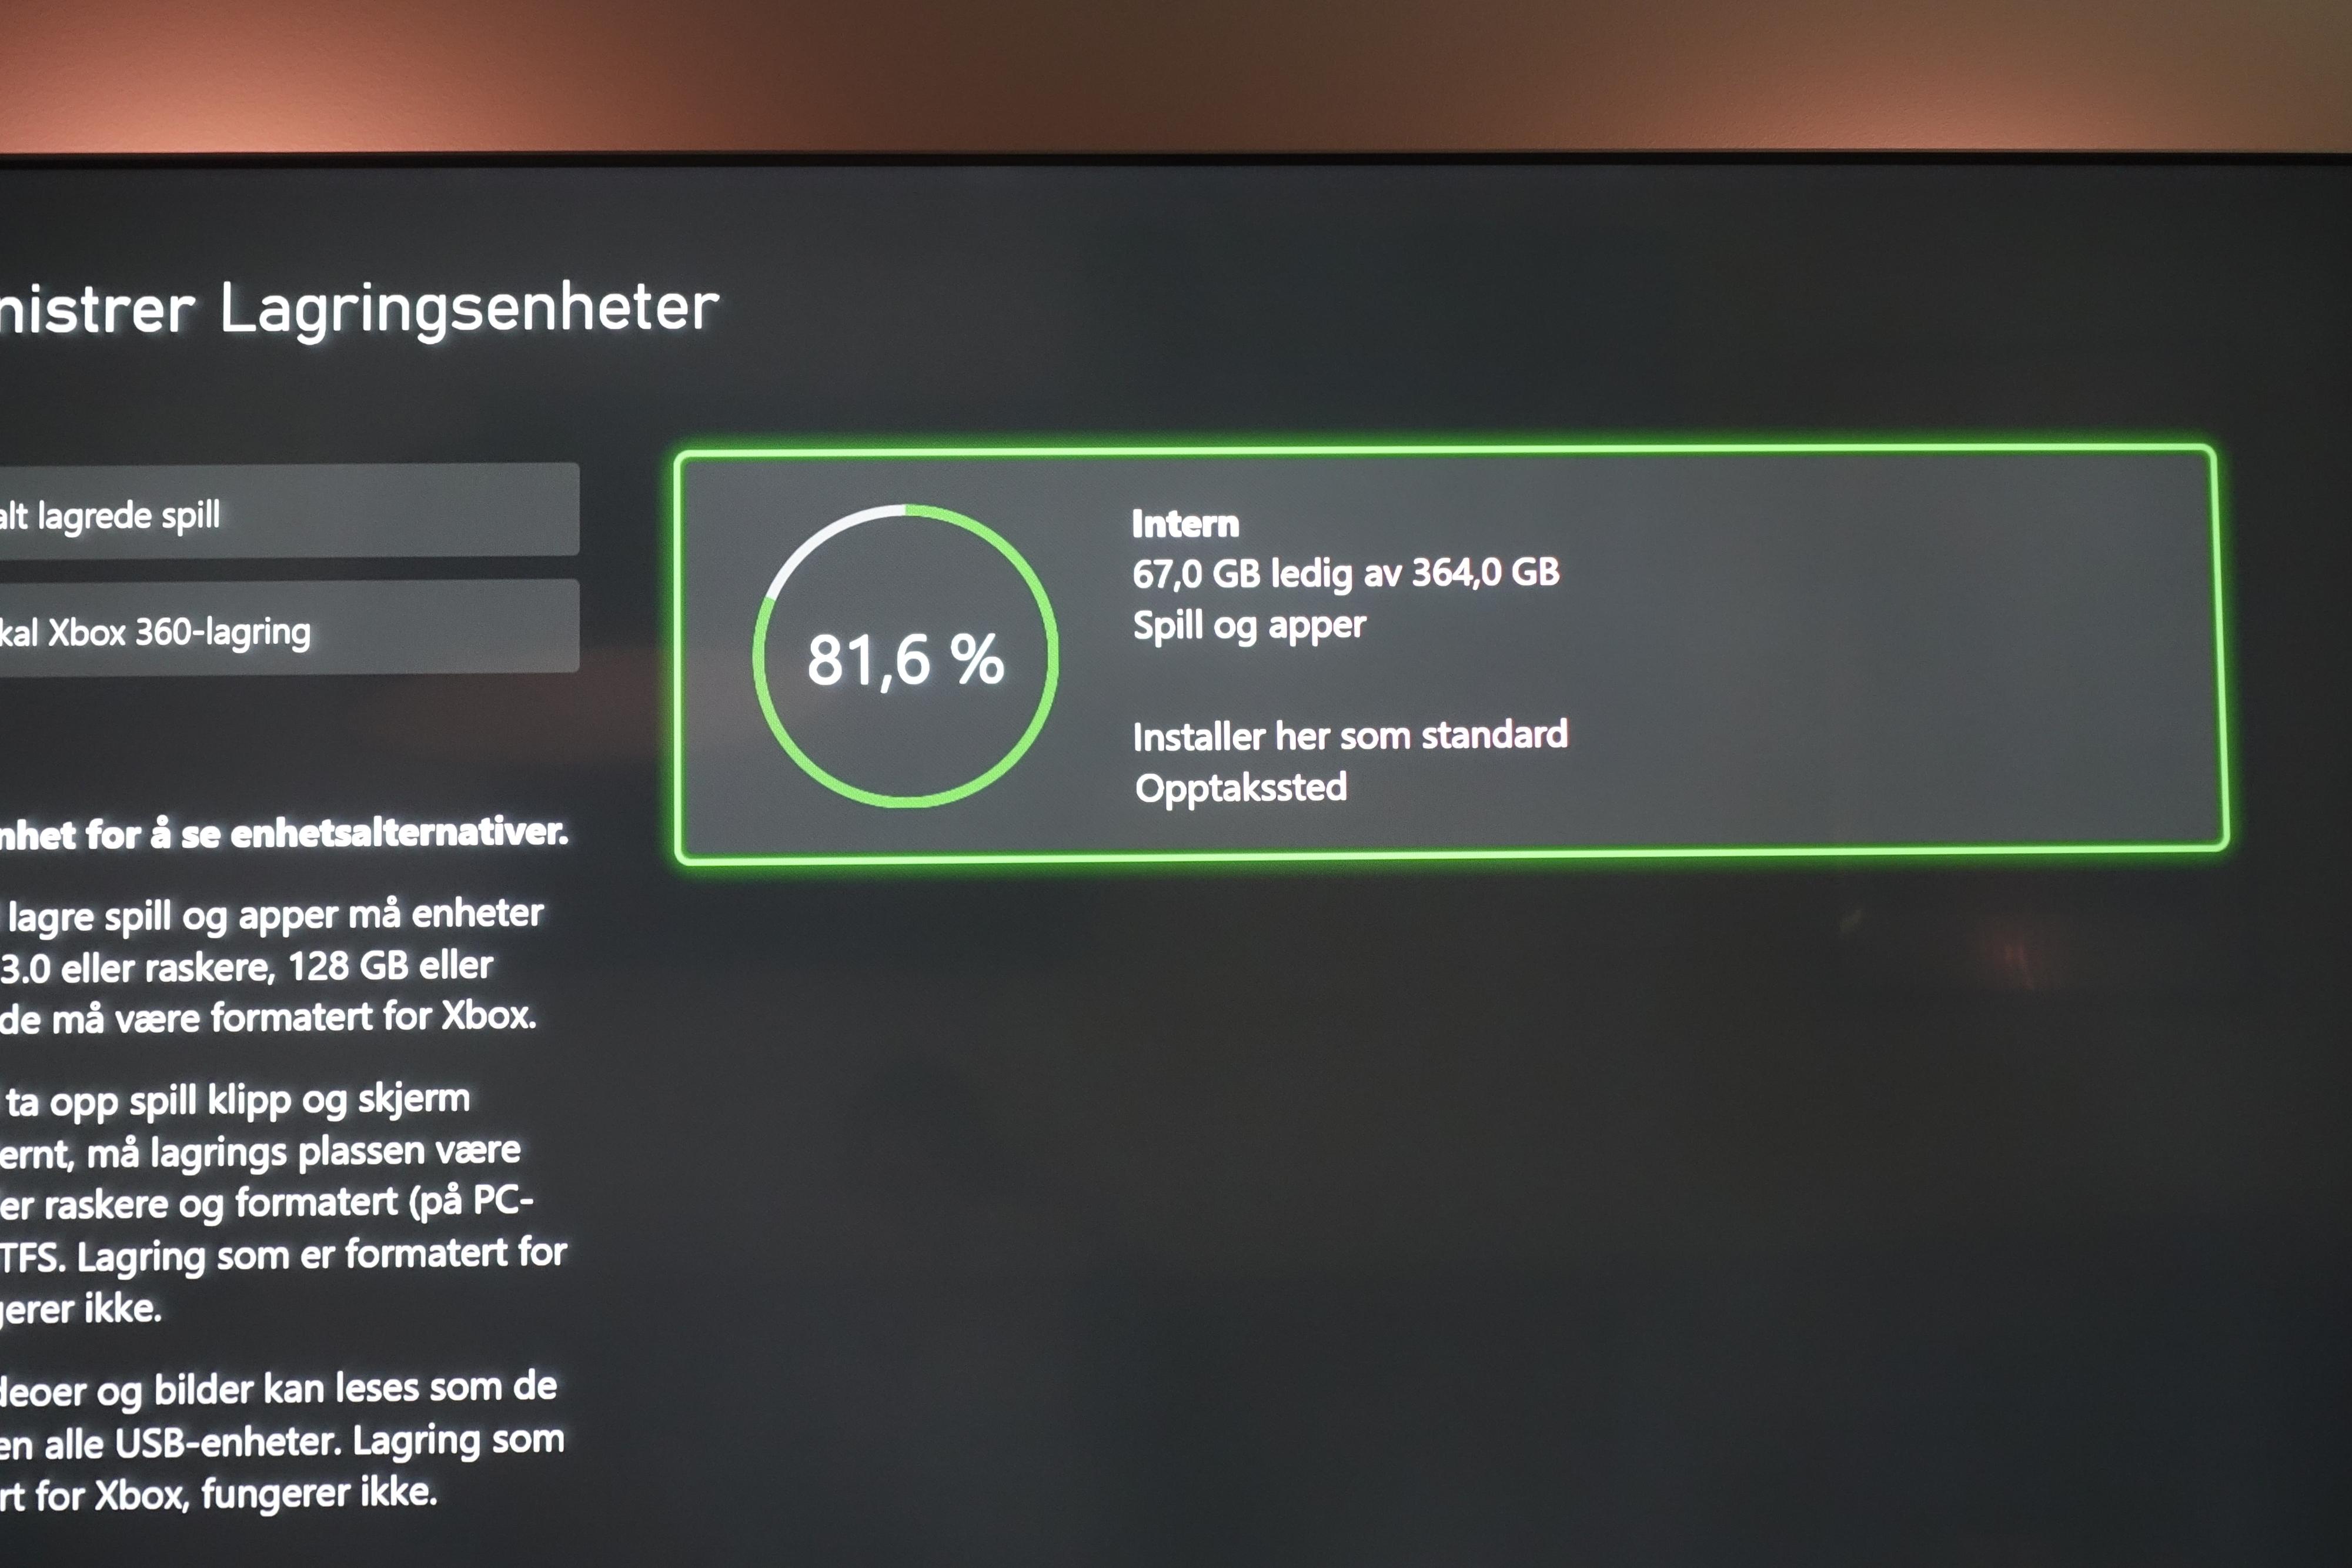 512 GB er i praksis 364 GB på Xbox Series S. 